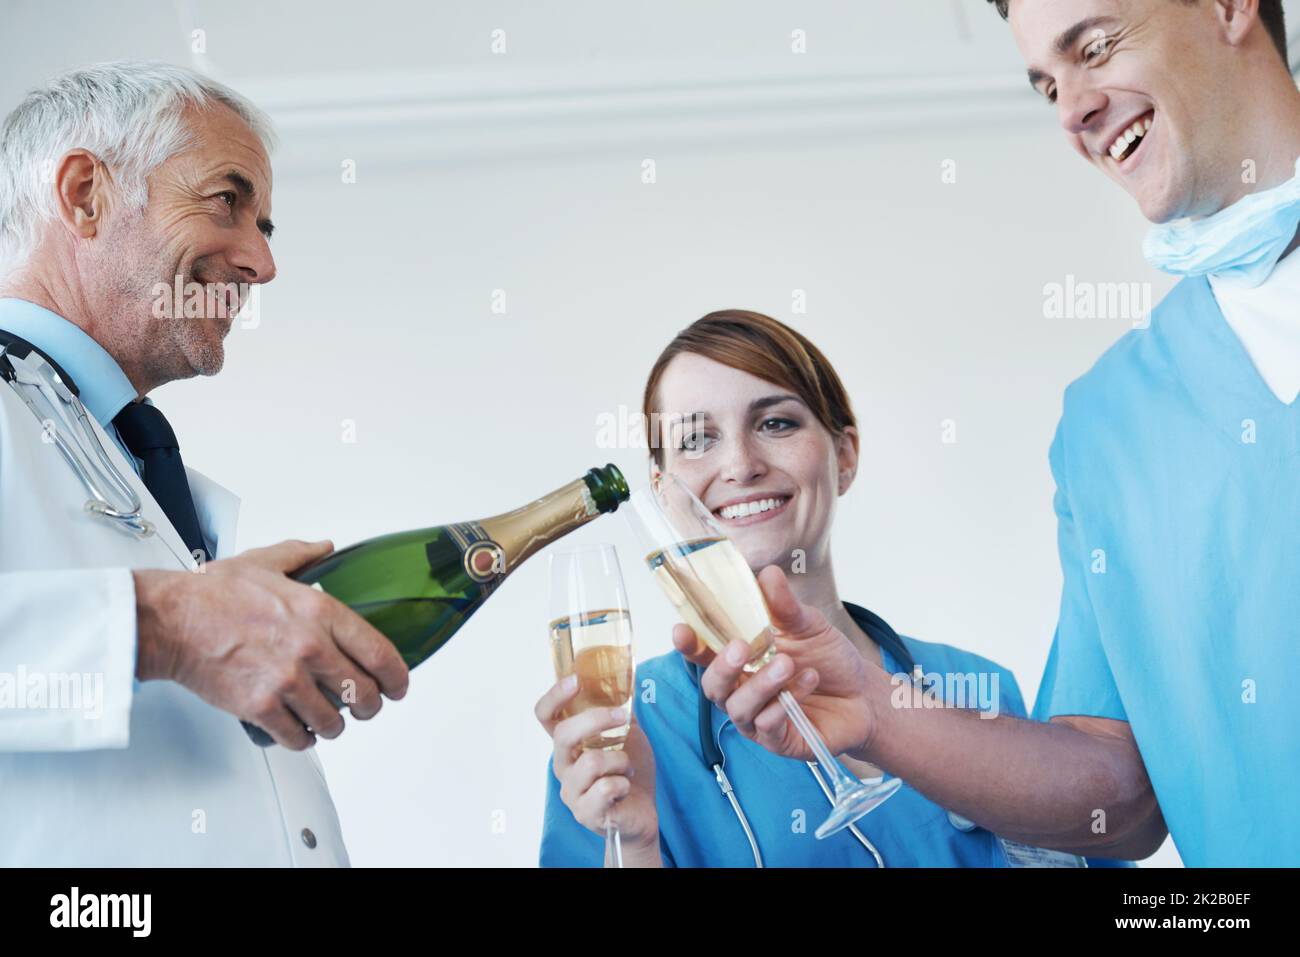 Jubel zu einem erfolgreichen Eingriff. Ein Hausarzt, eine Krankenschwester und ein Chirurg trinken zusammen Champagner nach einem erfolgreichen Eingriff. Stockfoto